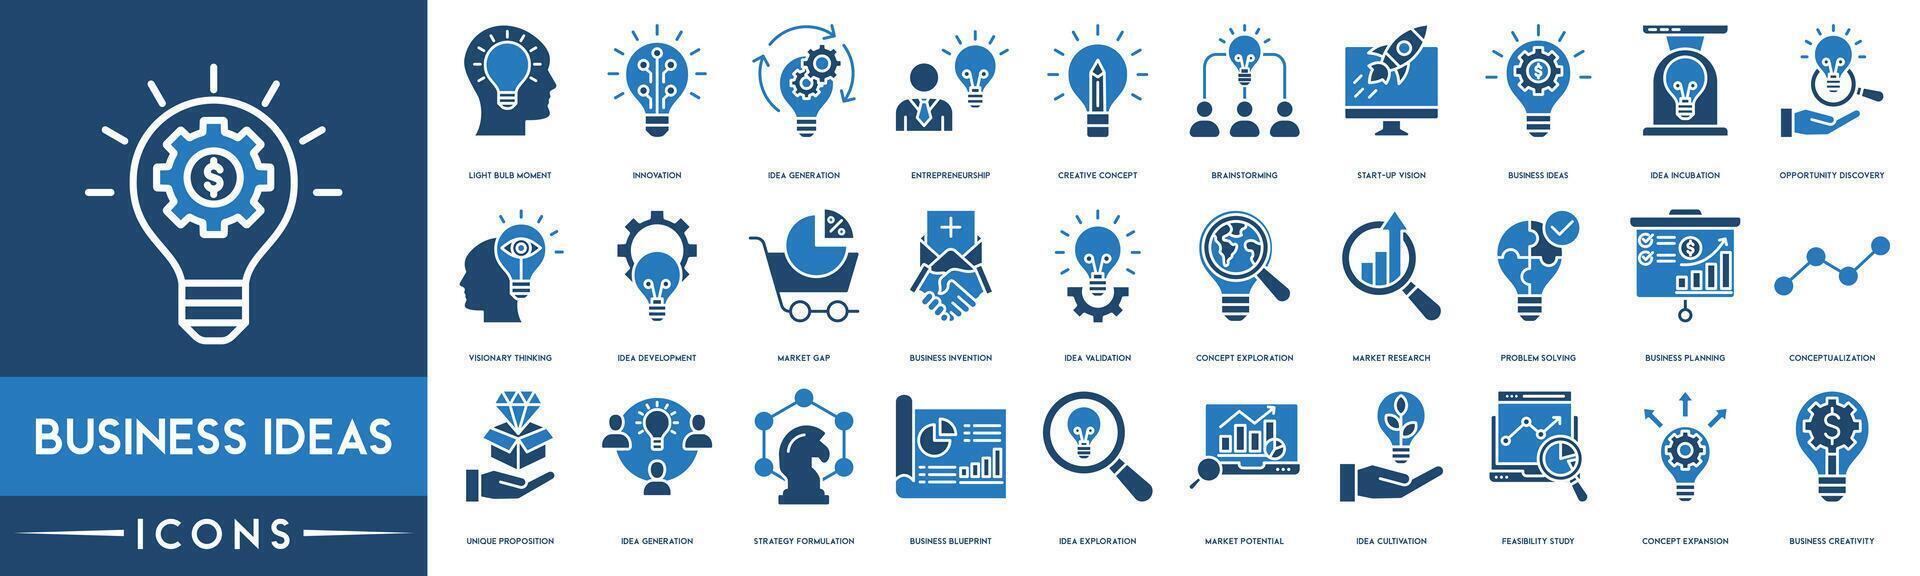 negocio ideas icono colocar. innovación, innovación, mercado investigación, problema resolviendo, negocio planificación, negocio Plano, concepto expansión y negocio creatividad línea icono. vector